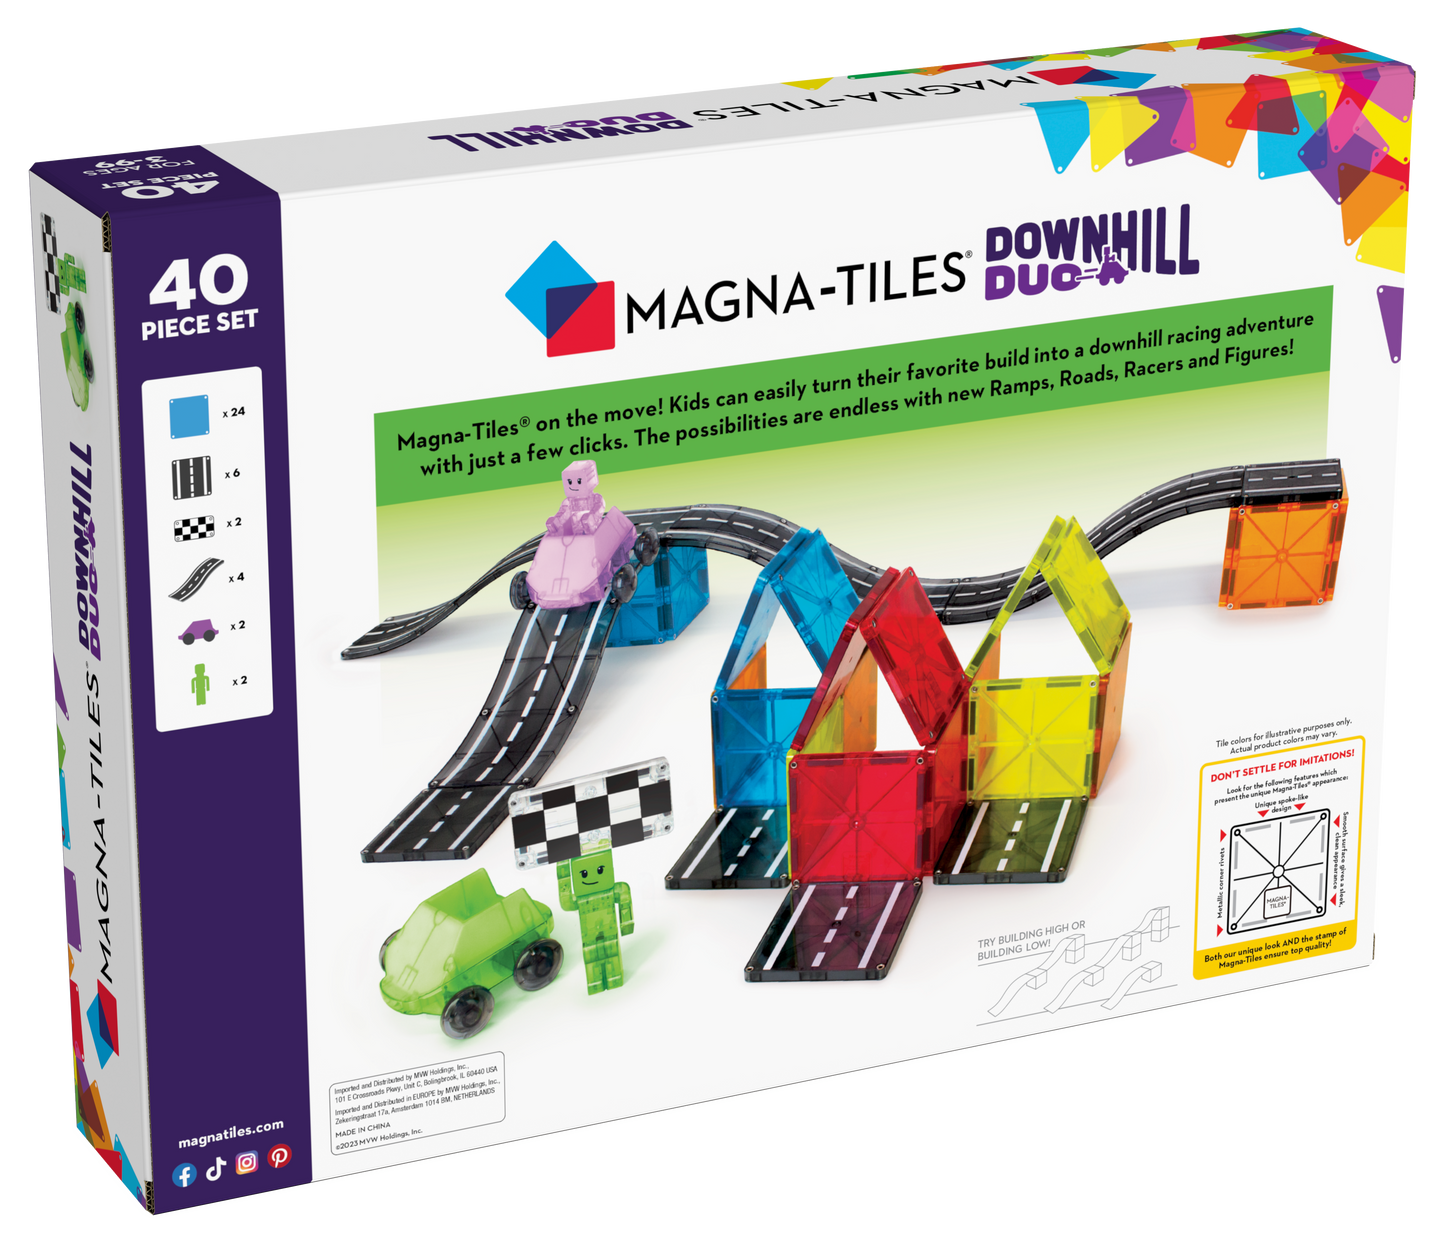 Magna-Tiles - Downhill Duo - Set 40 Piece 